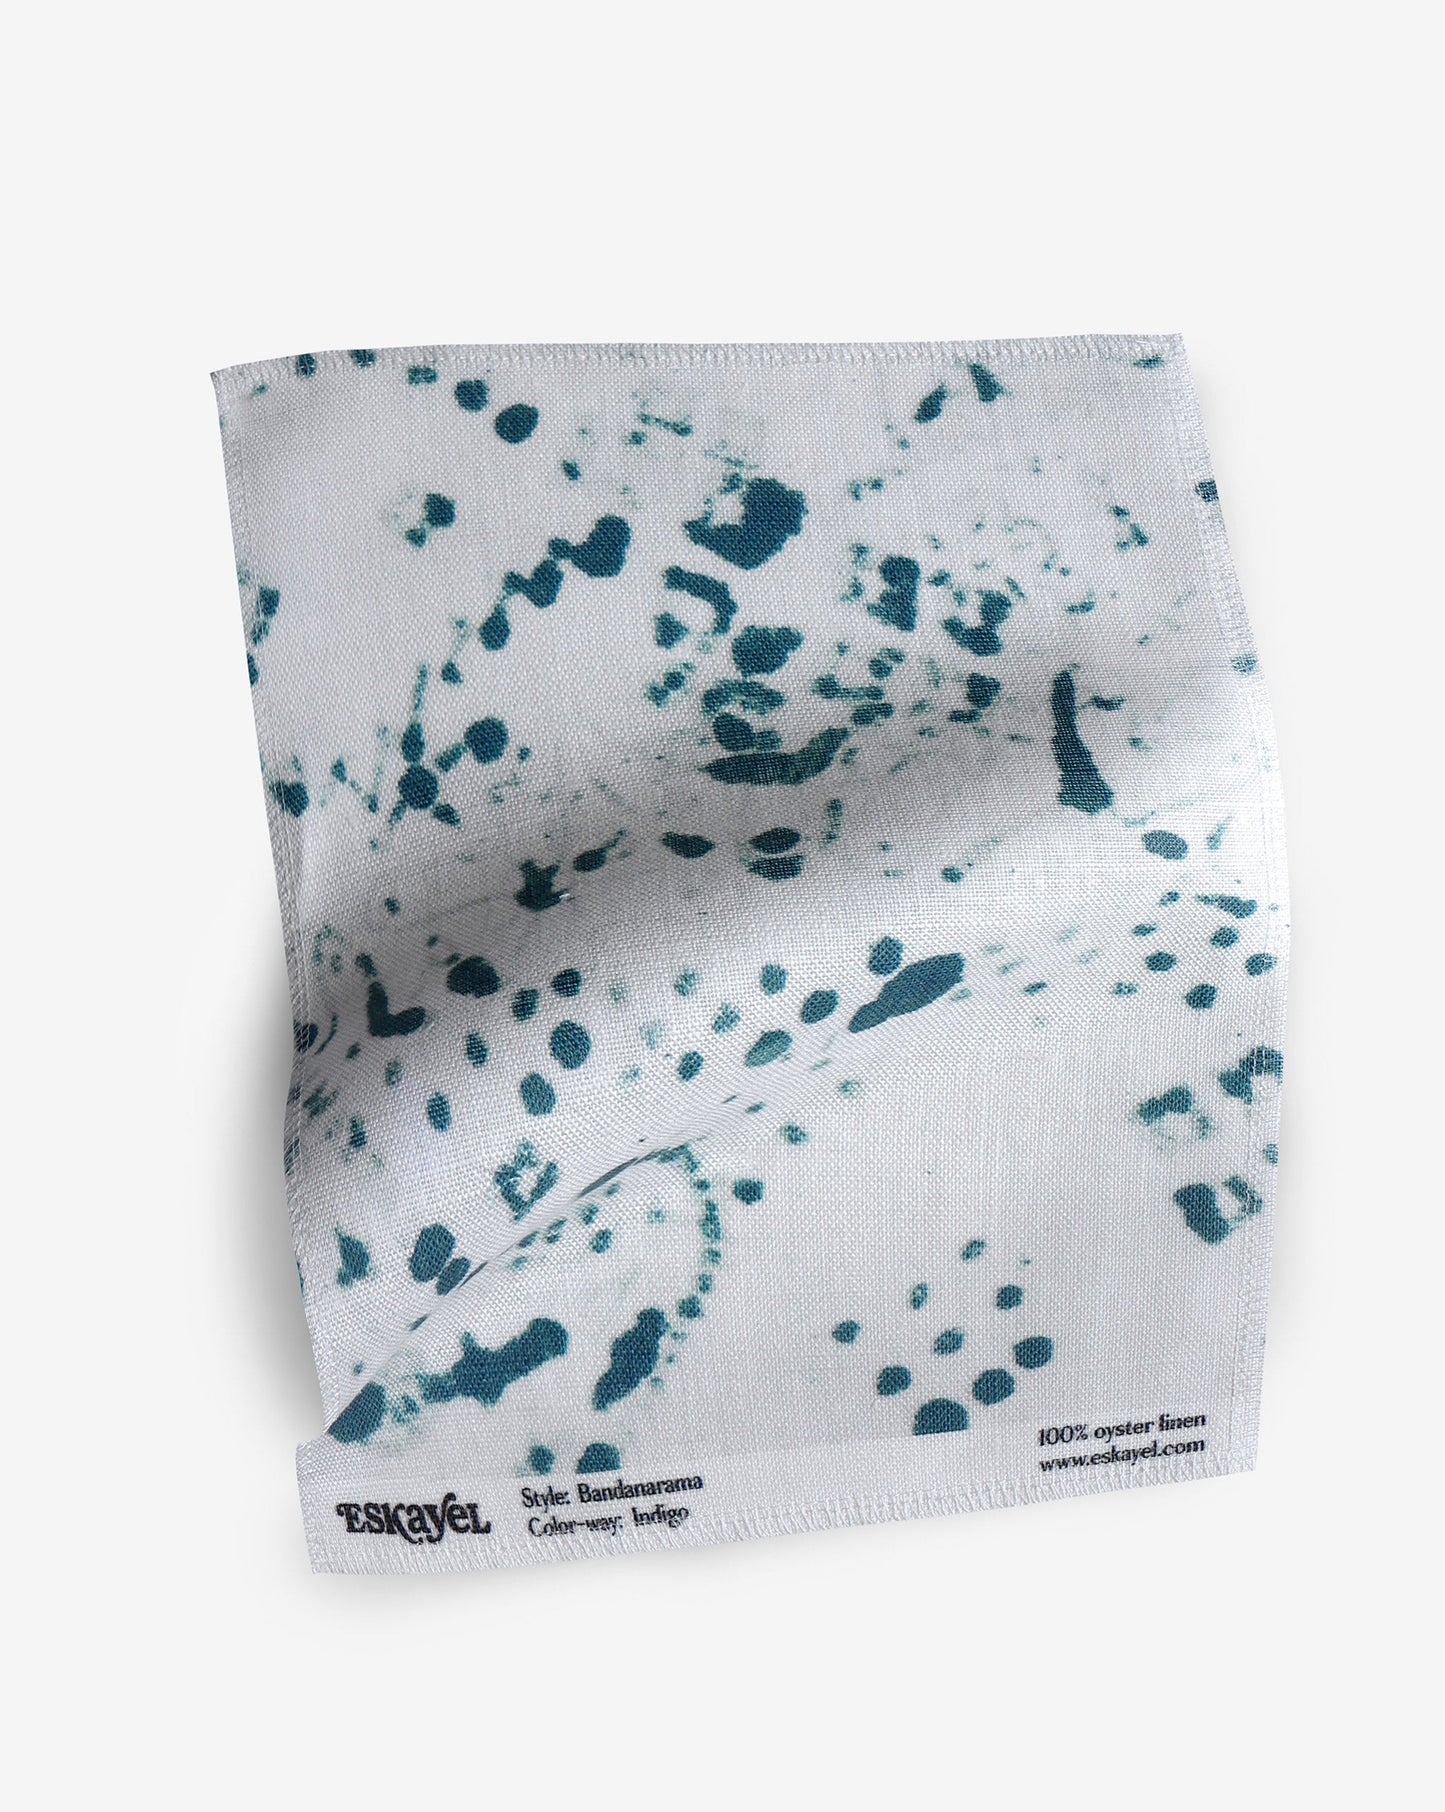 A Bandanarama Fabric Sample||Indigo towel with blue splatters on a white background.